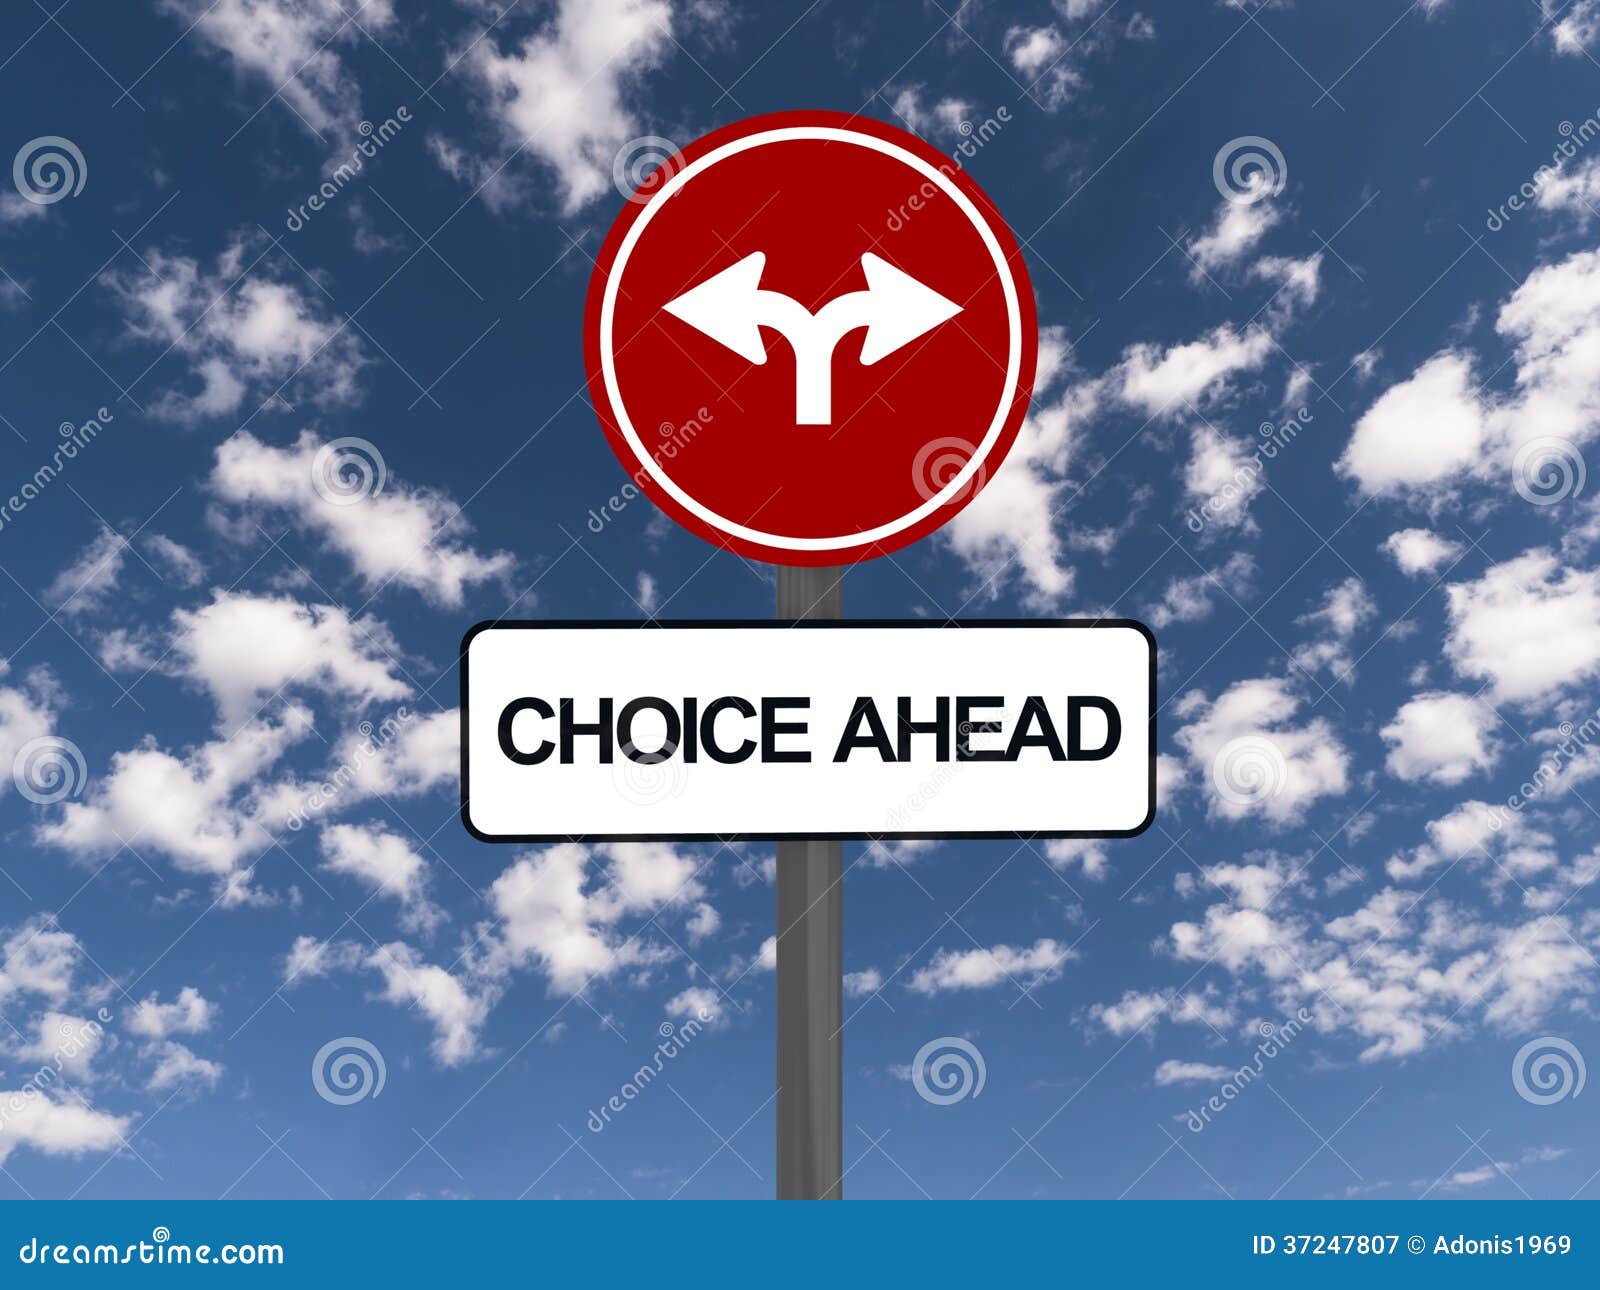 choice ahead